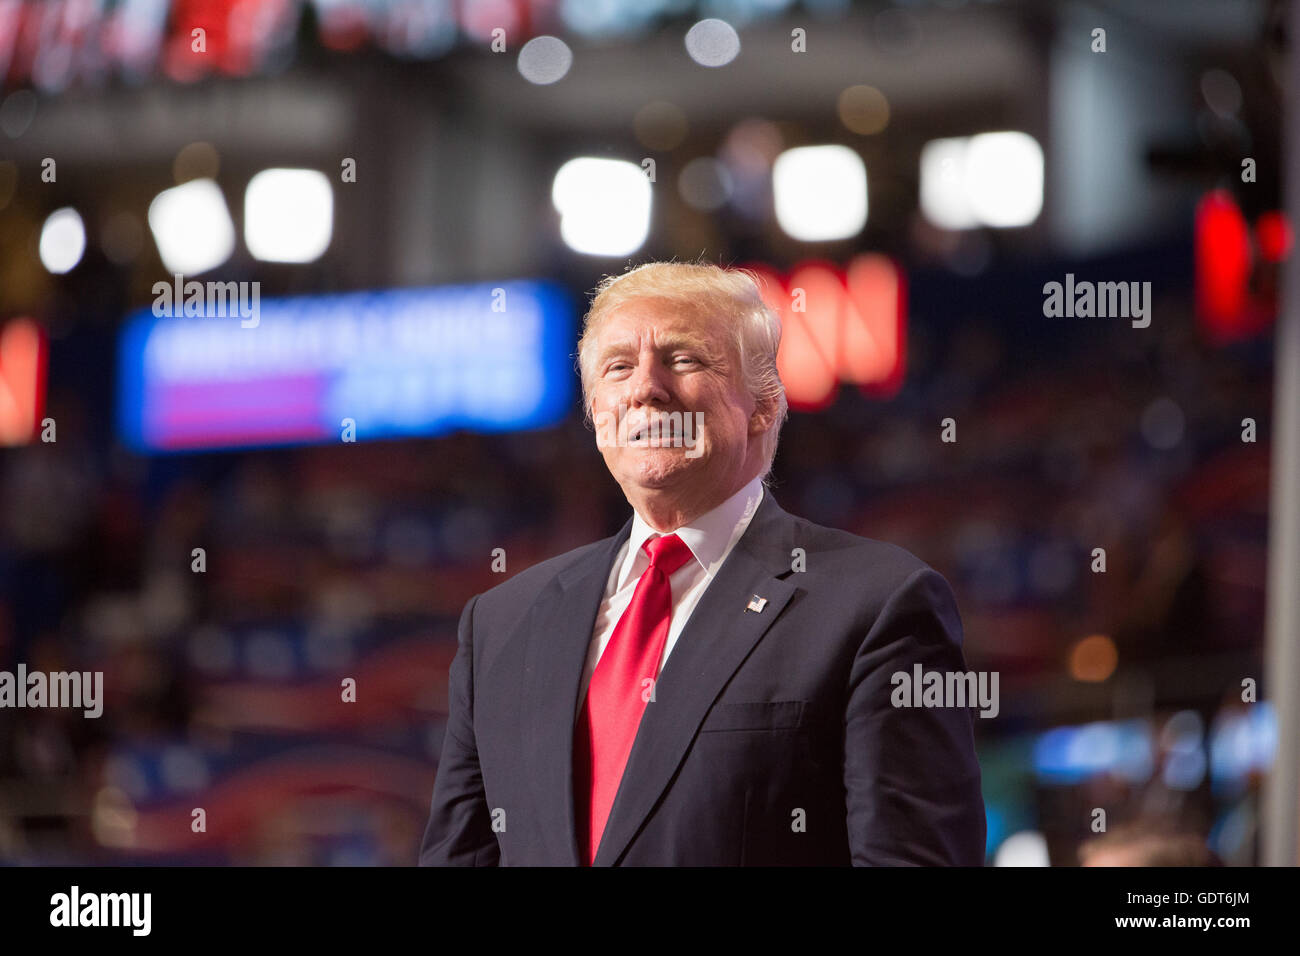 Cleveland, Ohio, USA; 21. Juli 2016: Donald J. Trump nimmt die Nominierung für das Amt des Präsidenten auf der Republican National Convention an. (Philip Scalia/Alamy Live News) Stockfoto